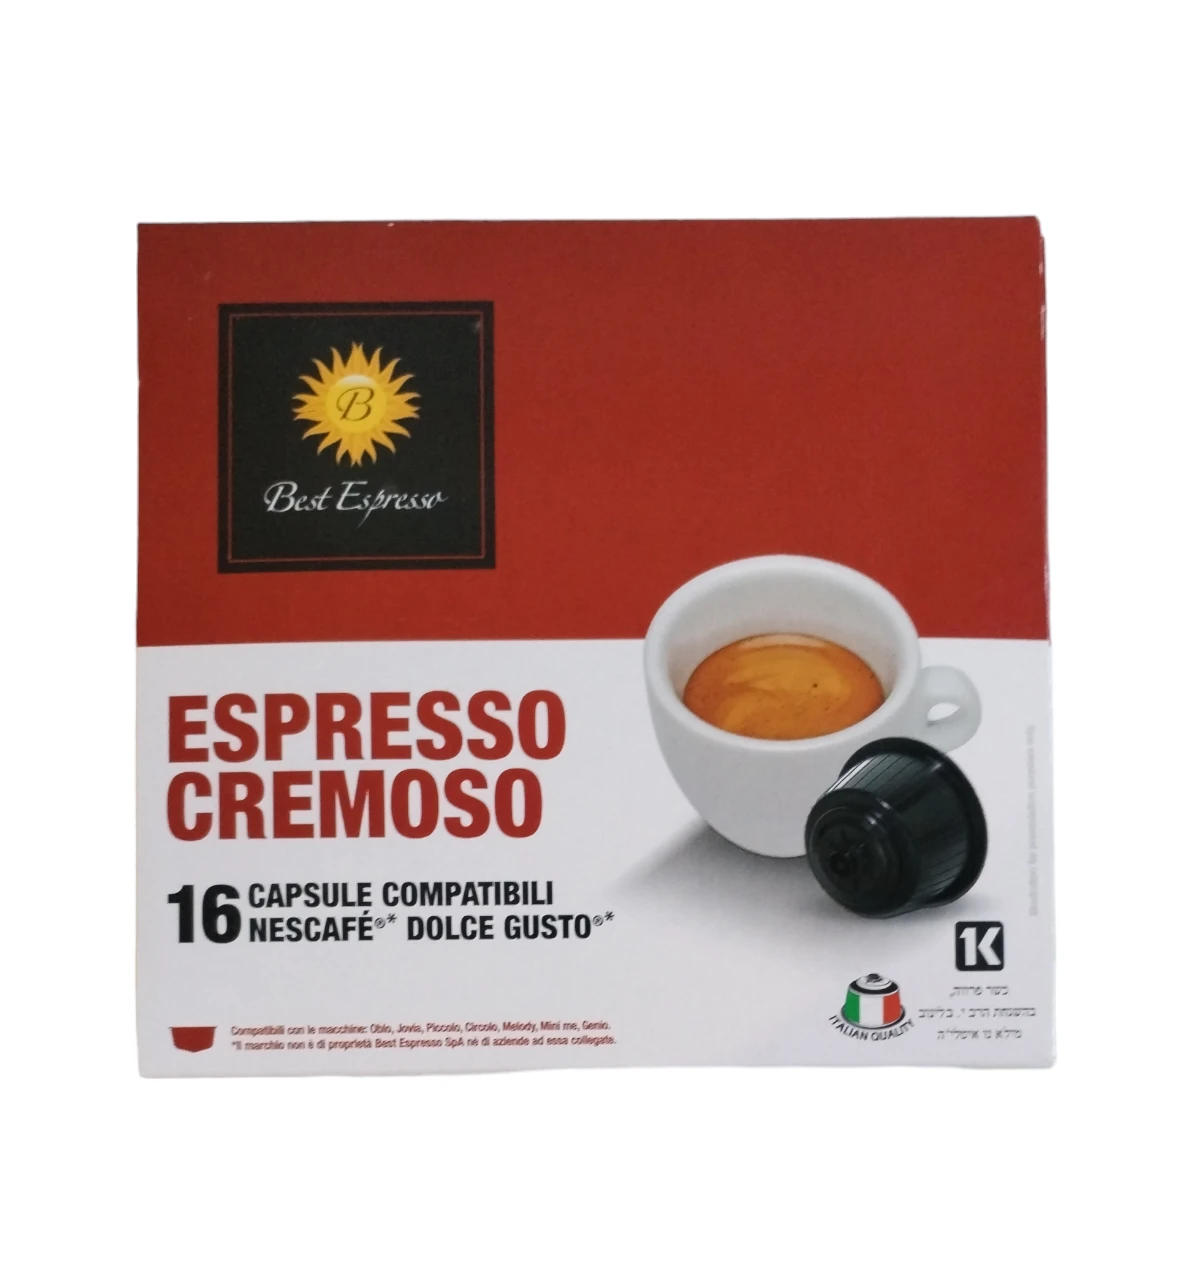 1557-espressocremosodolcegusto-17066123677753.png